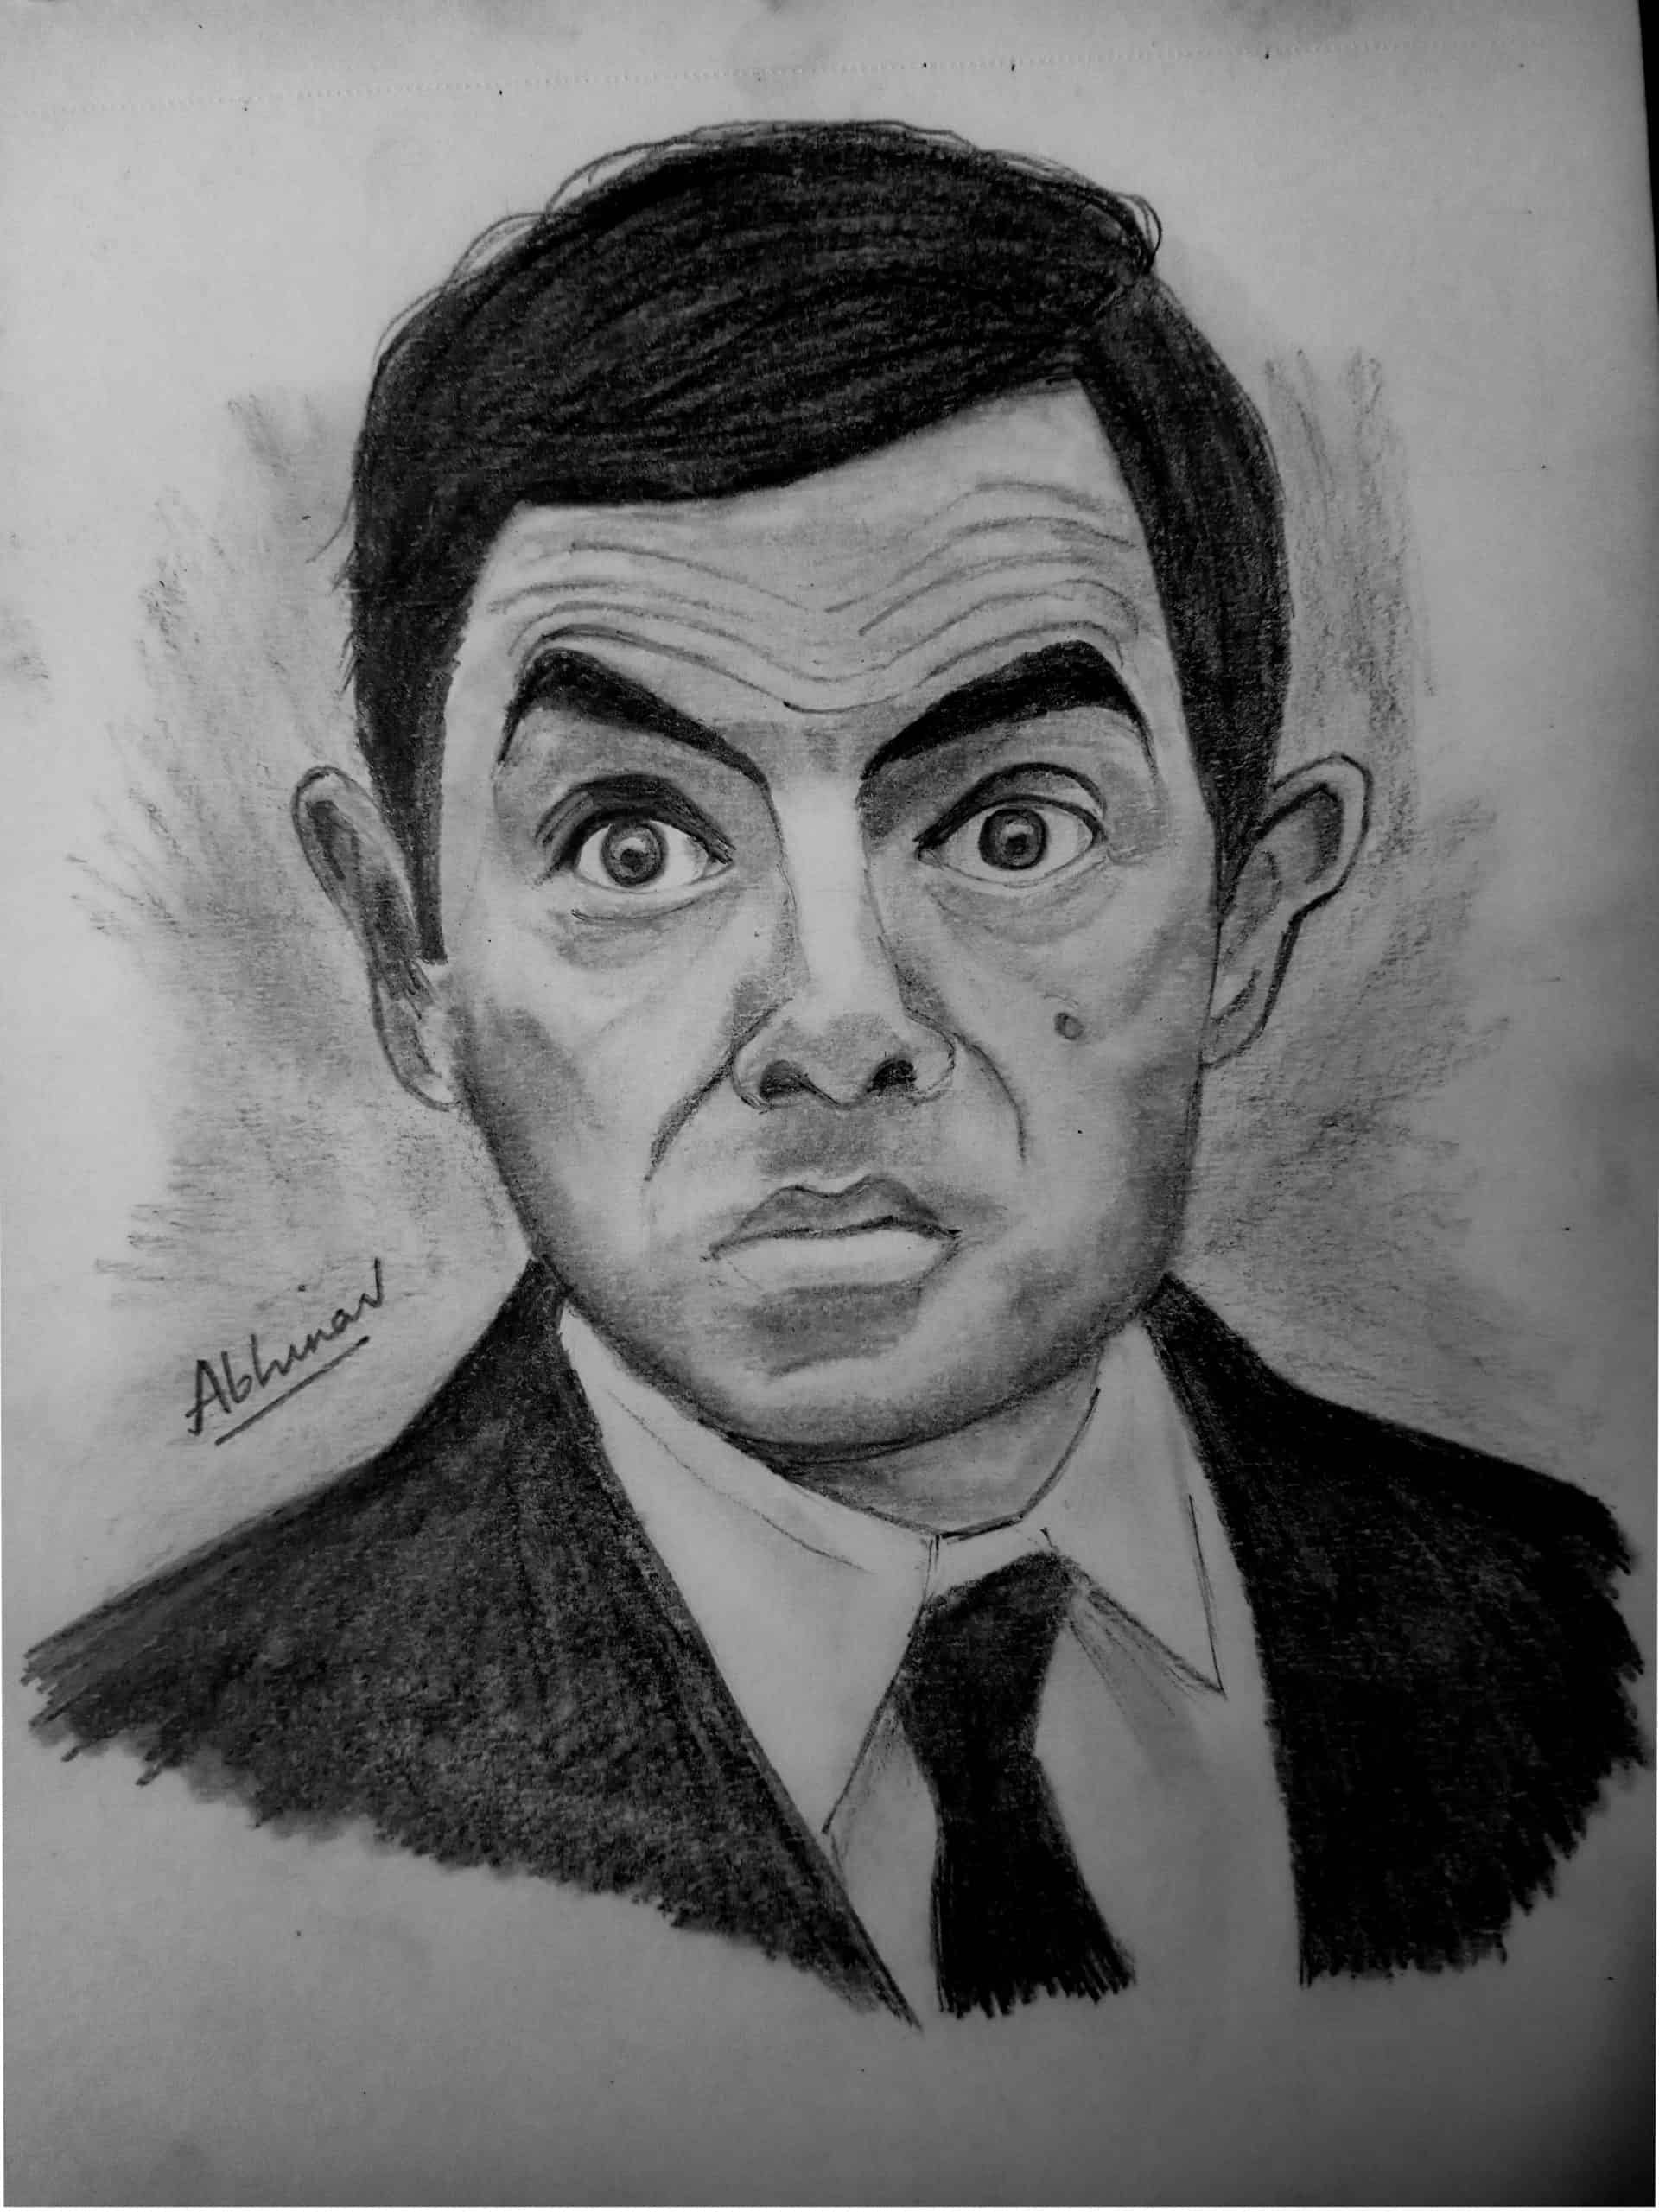 Mr Bean Sketch by schumacher7 on DeviantArt